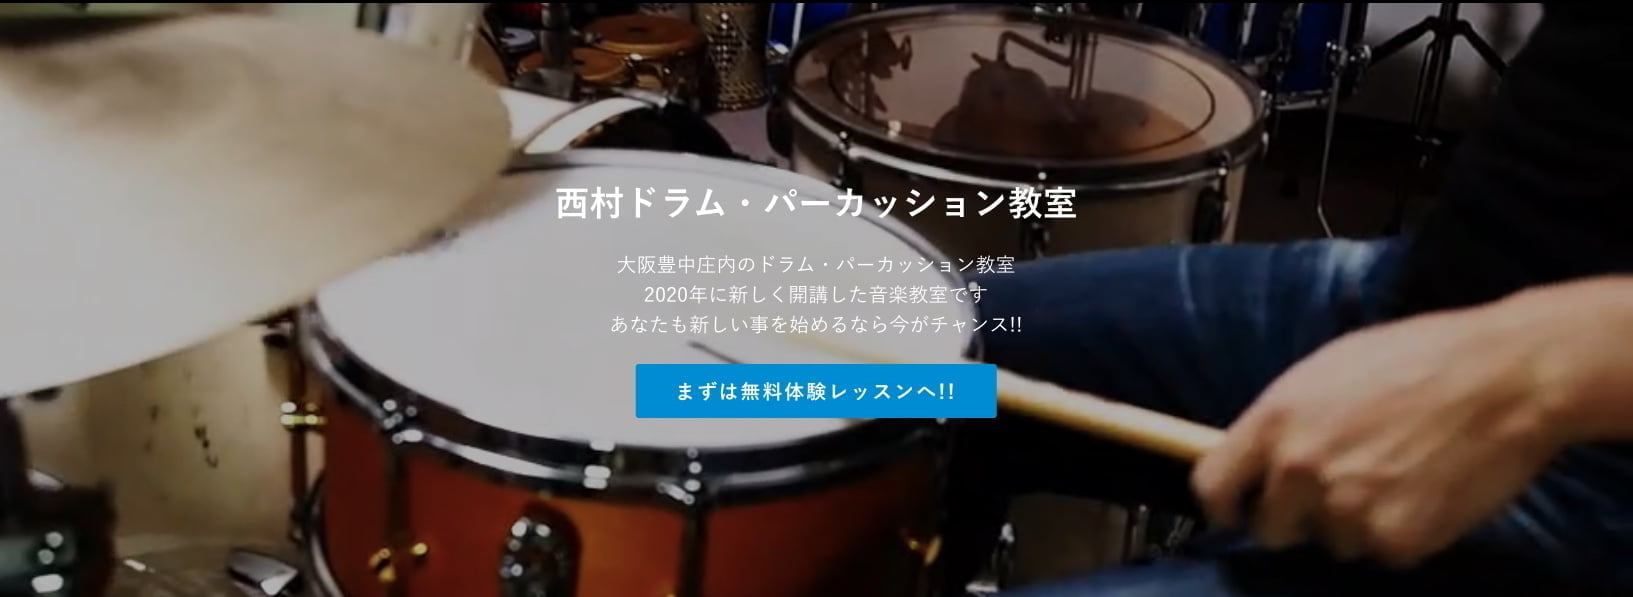 西村直浩ドラム・パーカッション教室